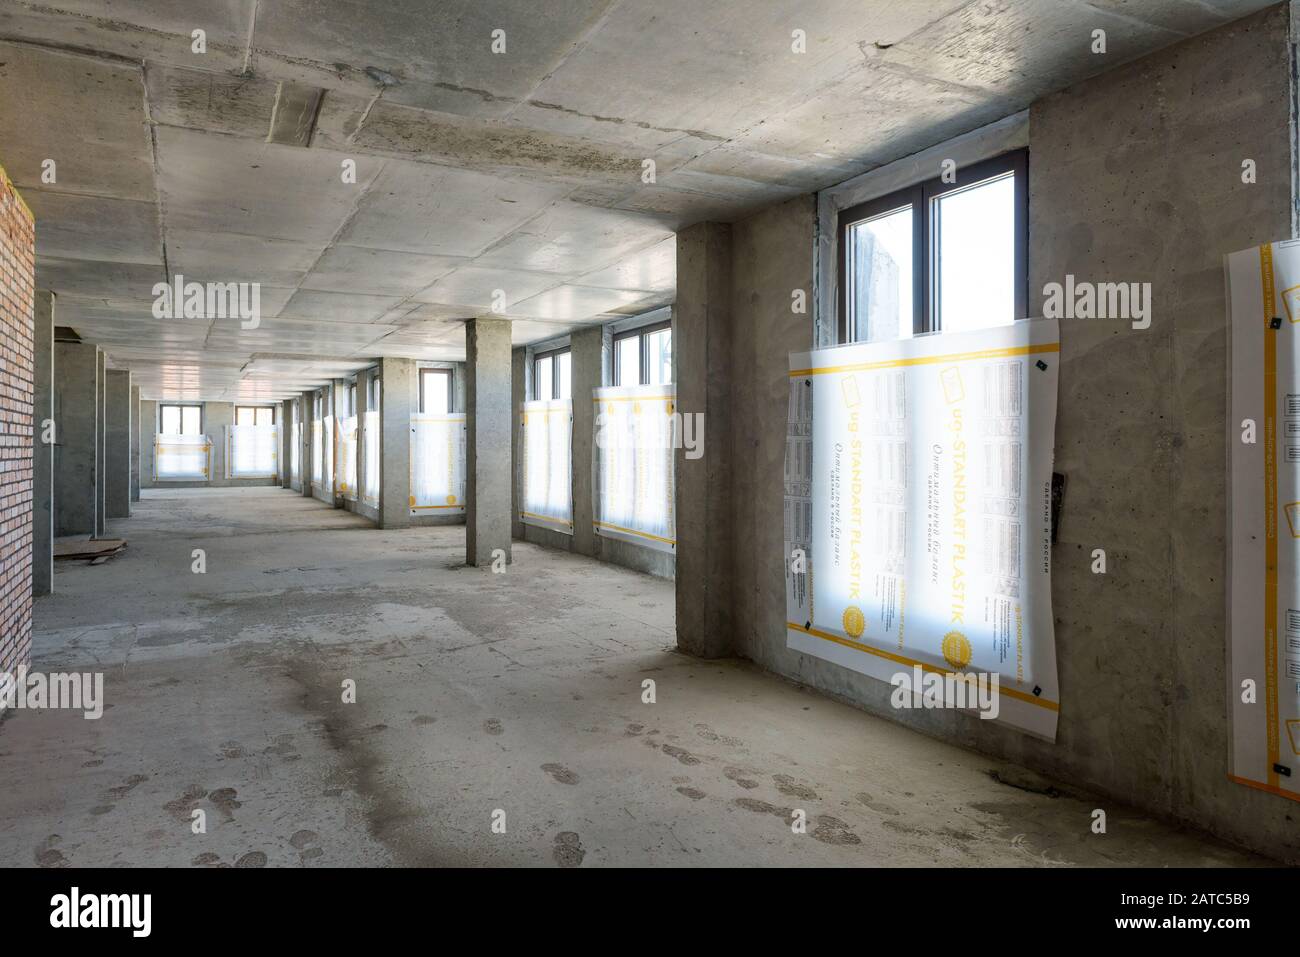 Moscou - 10 août 2017 : à l'intérieur de la structure en construction avec des murs en béton, un plafond et un sol. Vue panoramique sur le couloir du chantier Banque D'Images